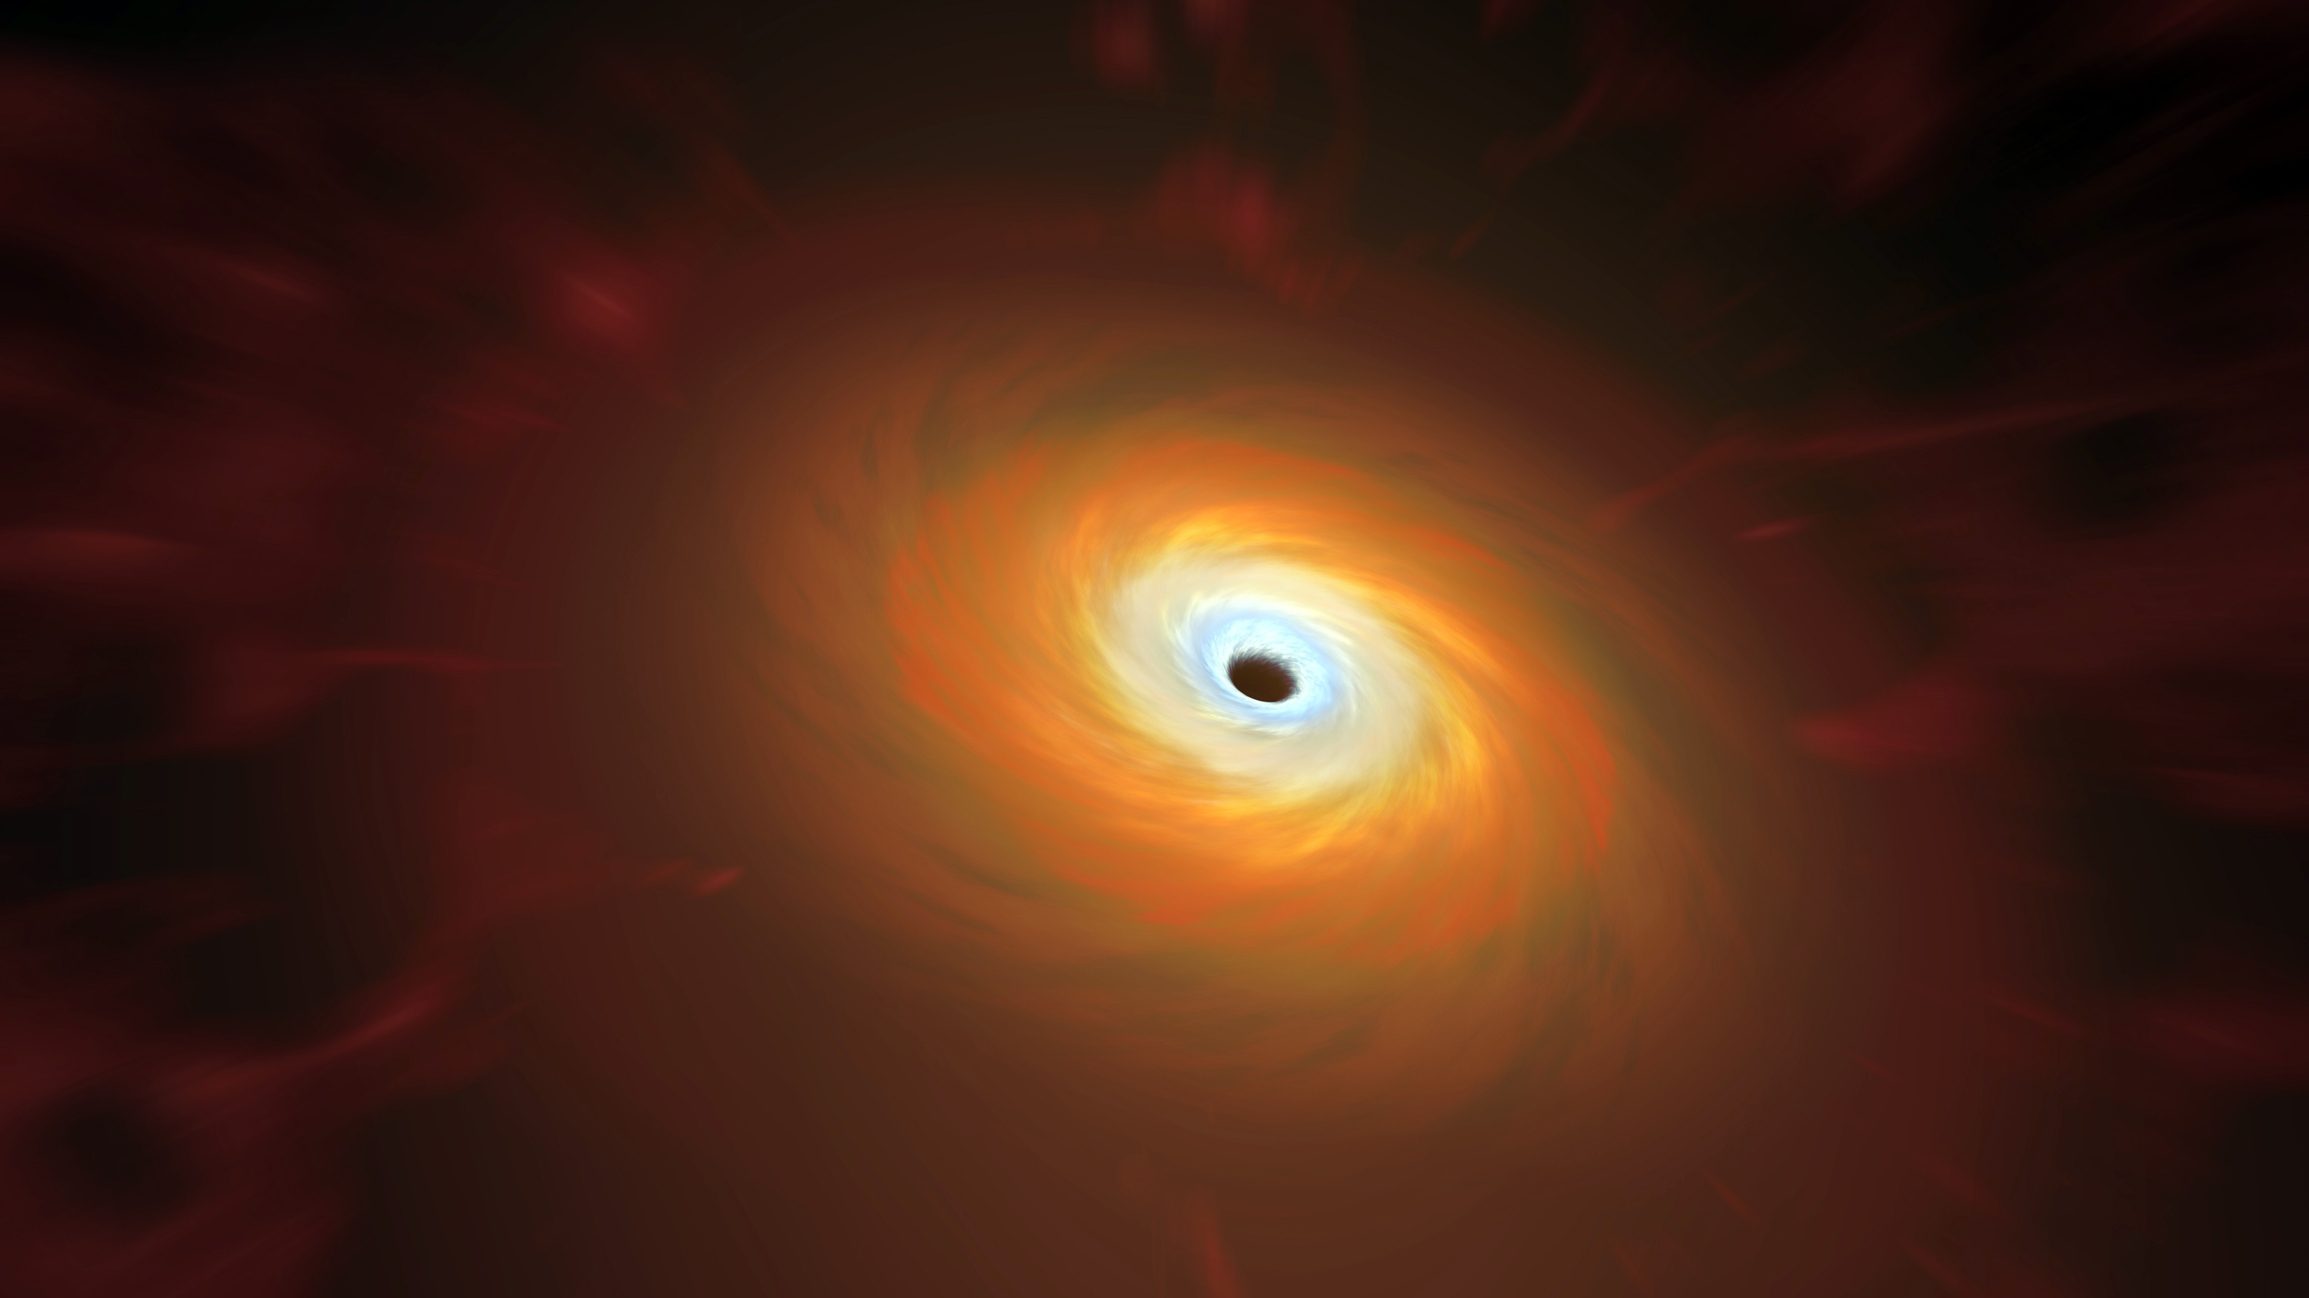 Magányos fekete lyukat találtak galaxisunkban